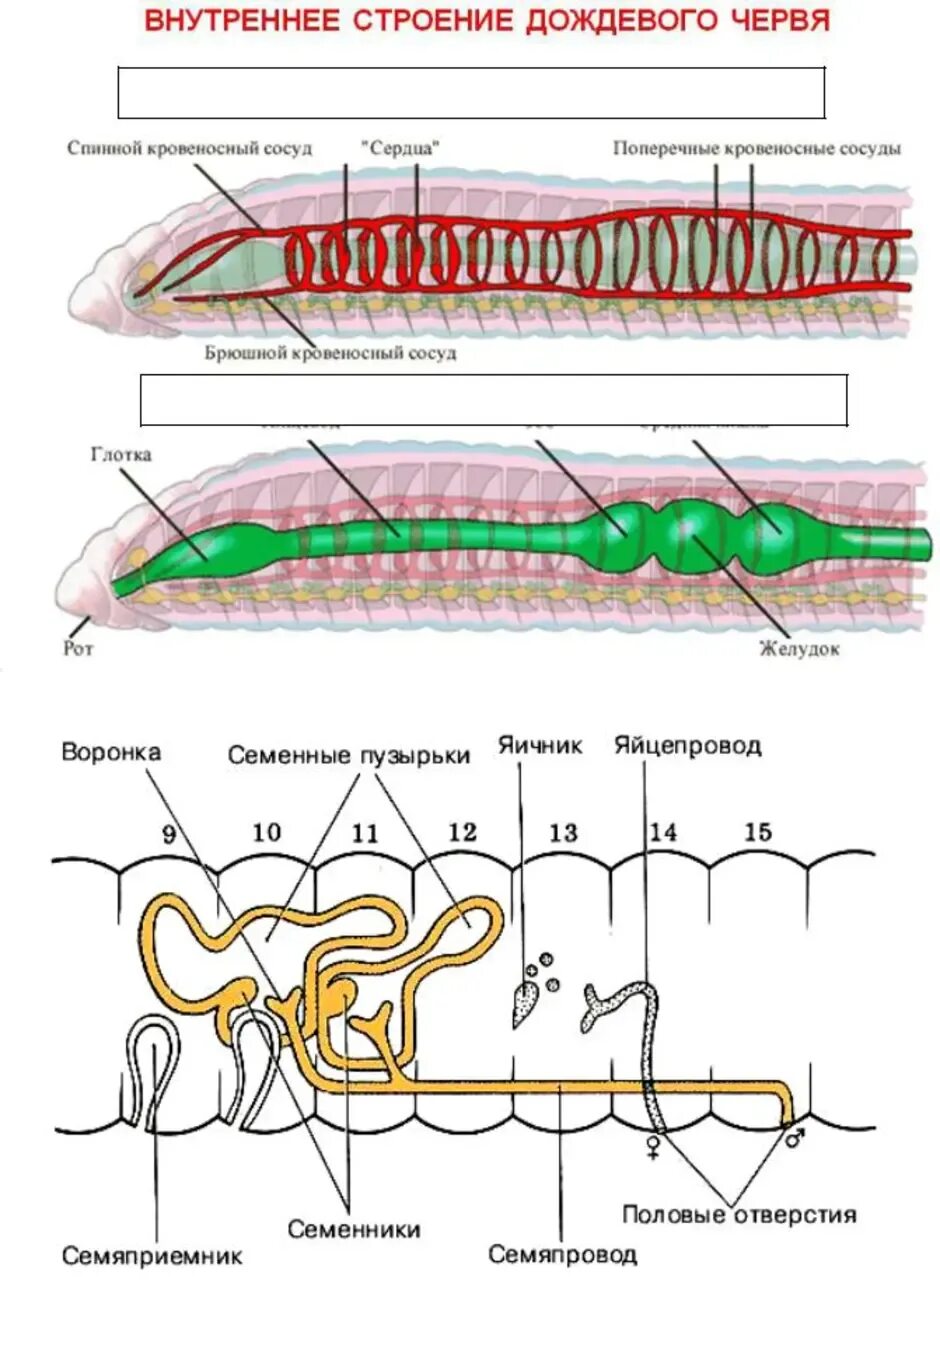 Рисунок строения червя. Строение половой системы дождевого червя. Системы дождевого червя таблица. Кольчатый червь строение половой системы. Половая система кольчатых червей.